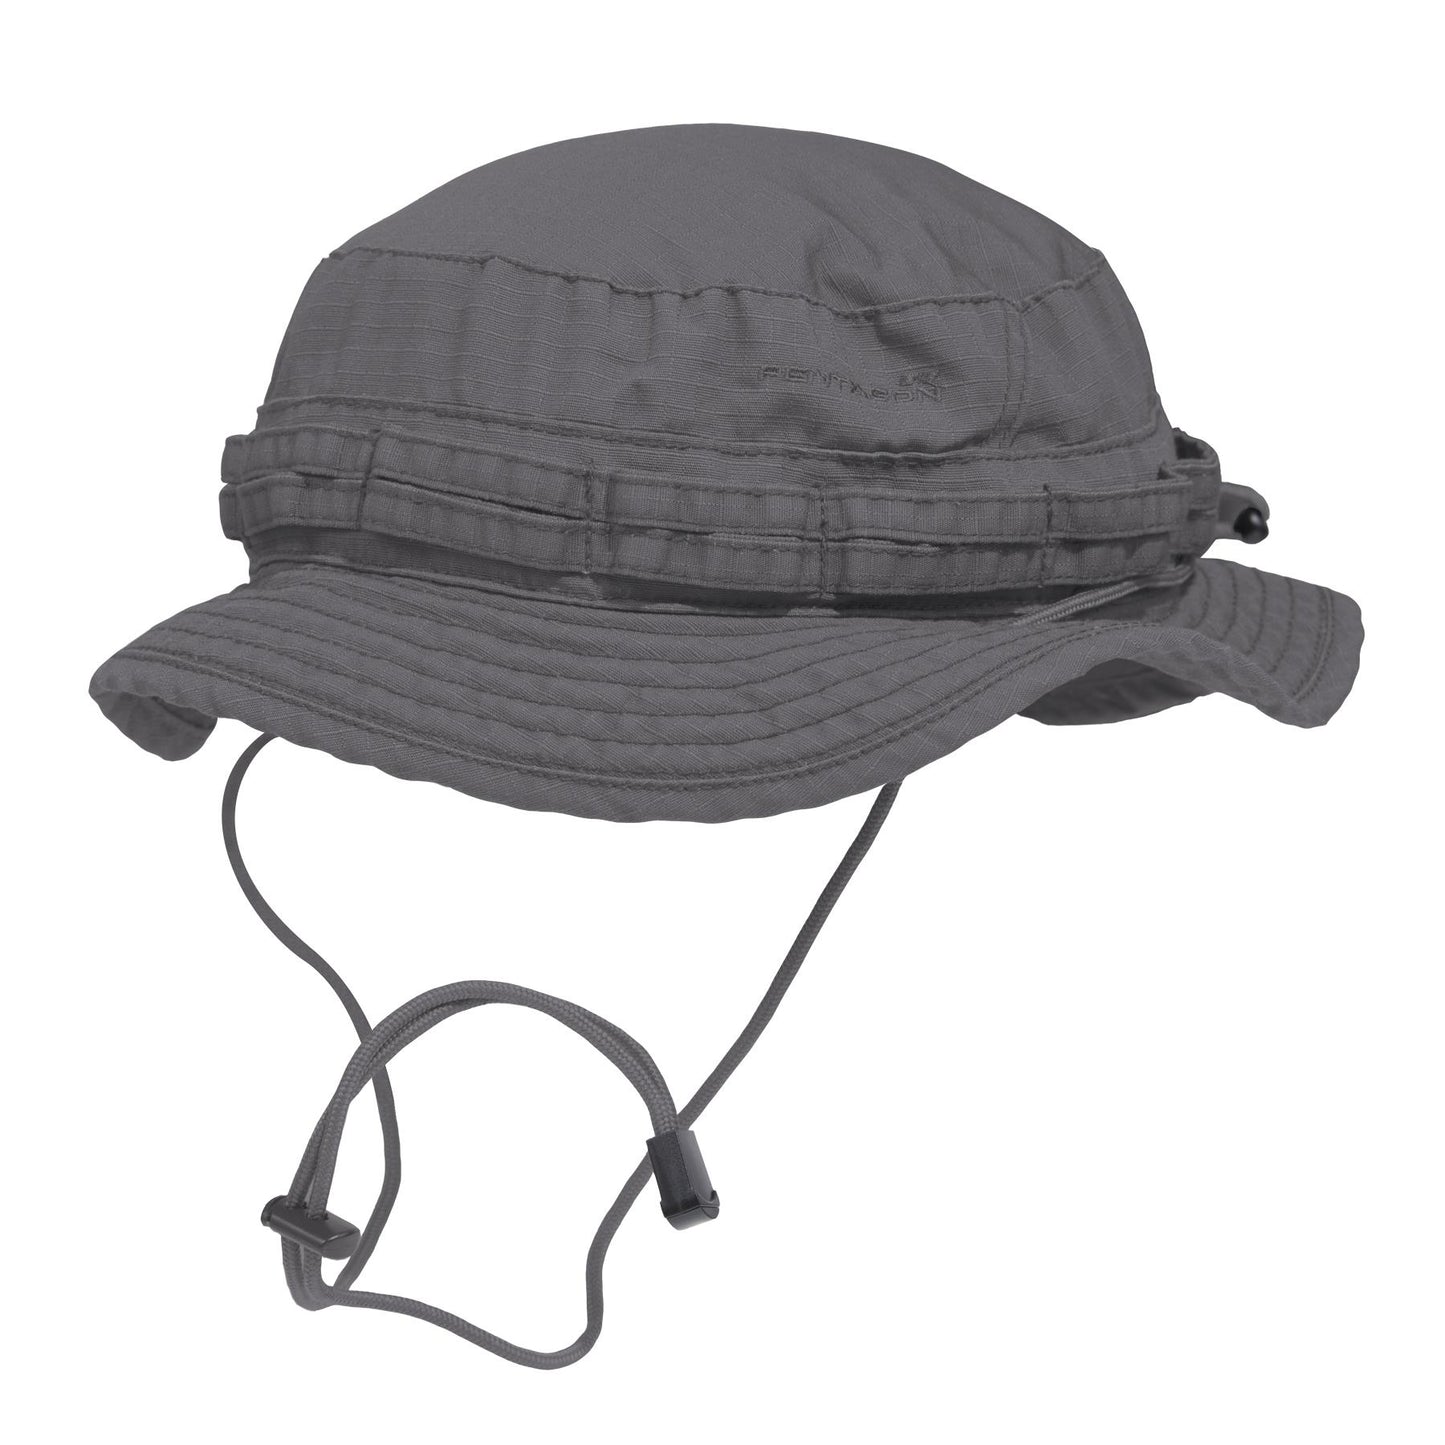 Pentagon Babylon Boonie Hat